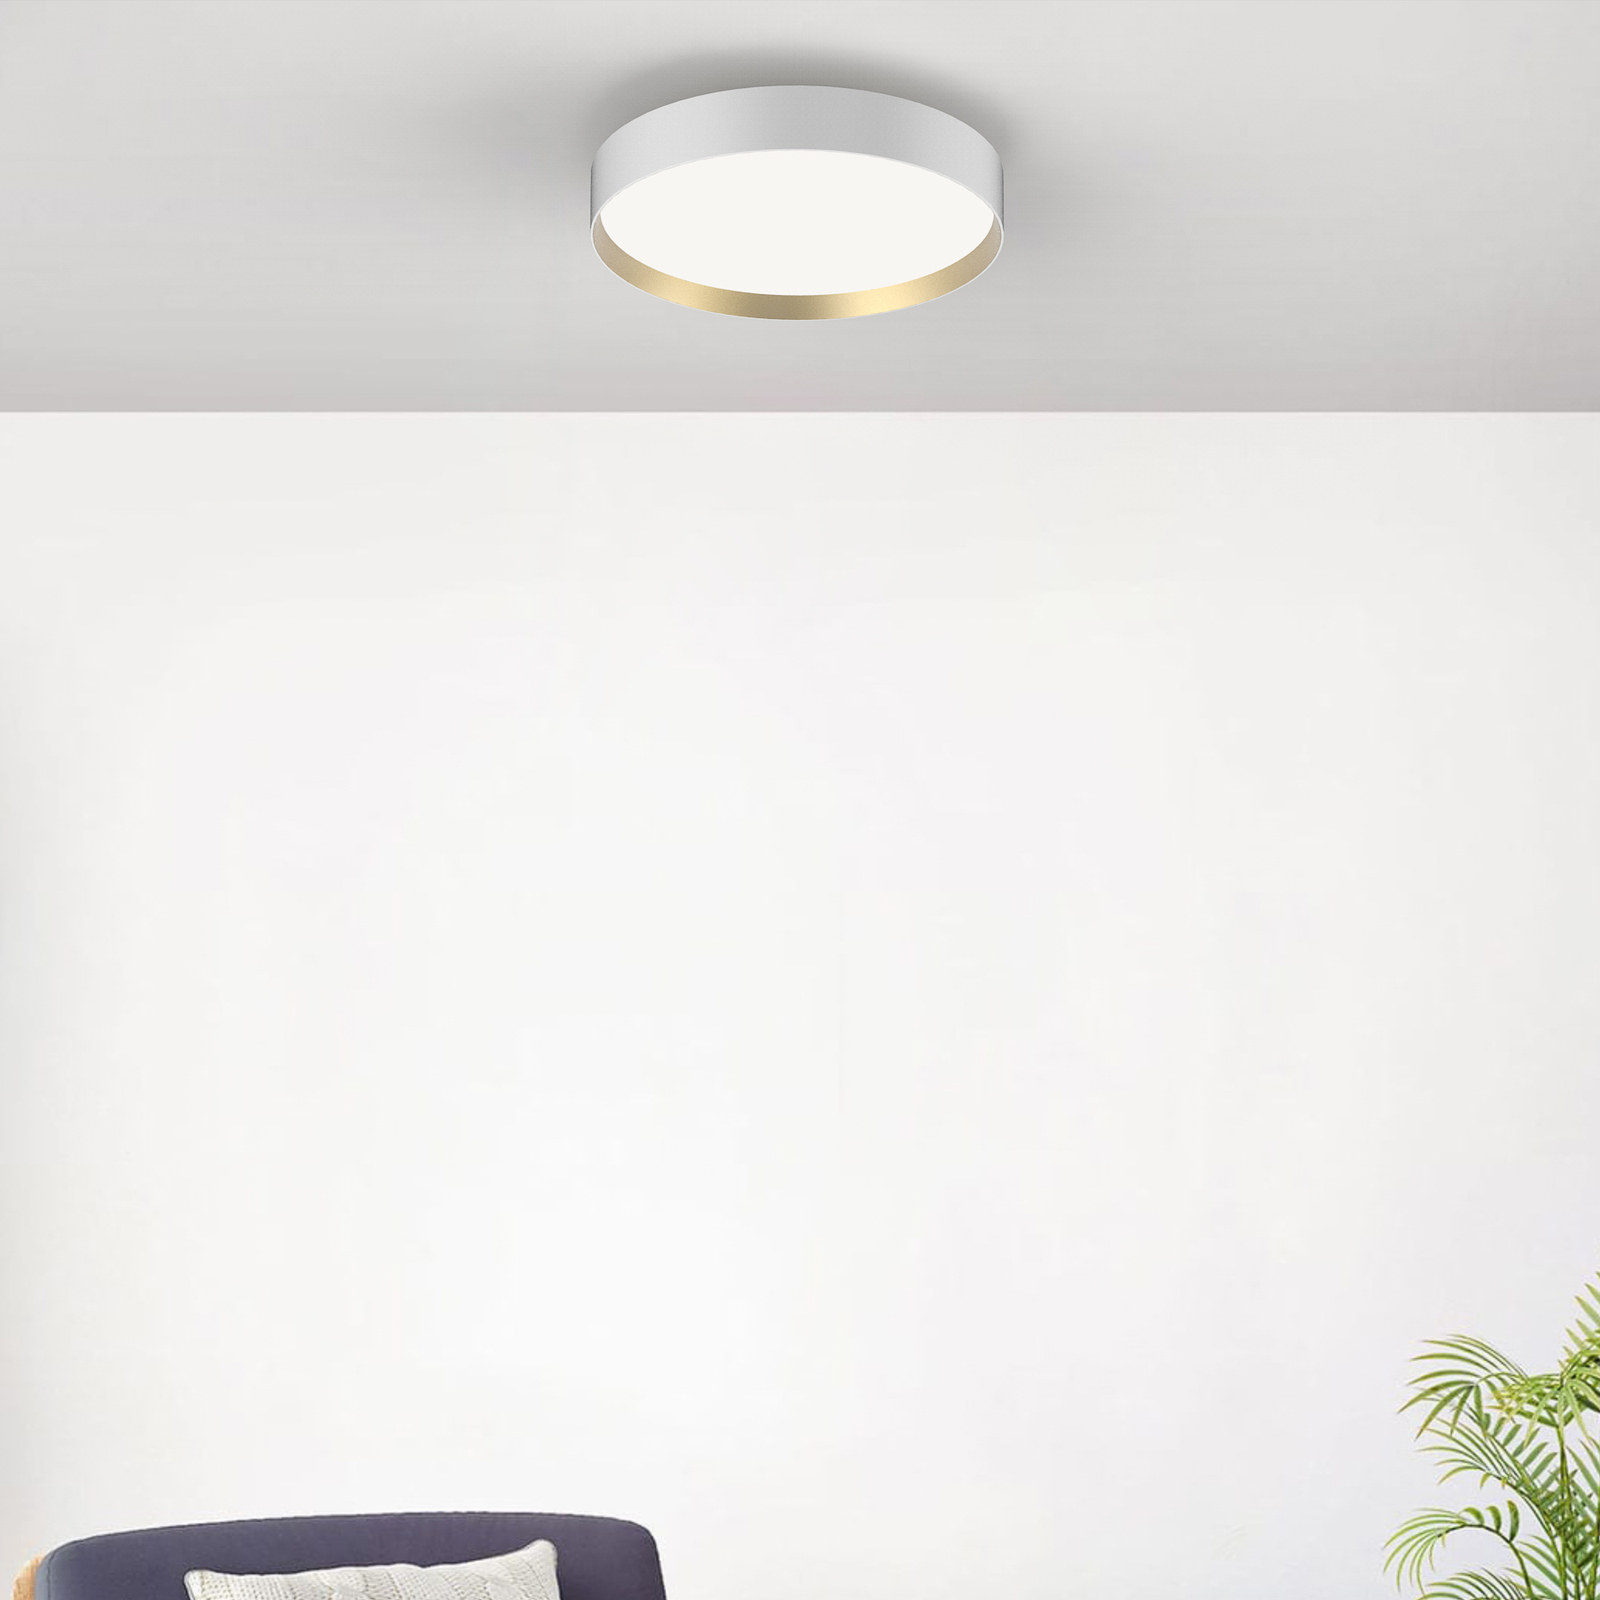 LOOM DESIGN Lucia LED ceiling lamp Ø60cm white/gold